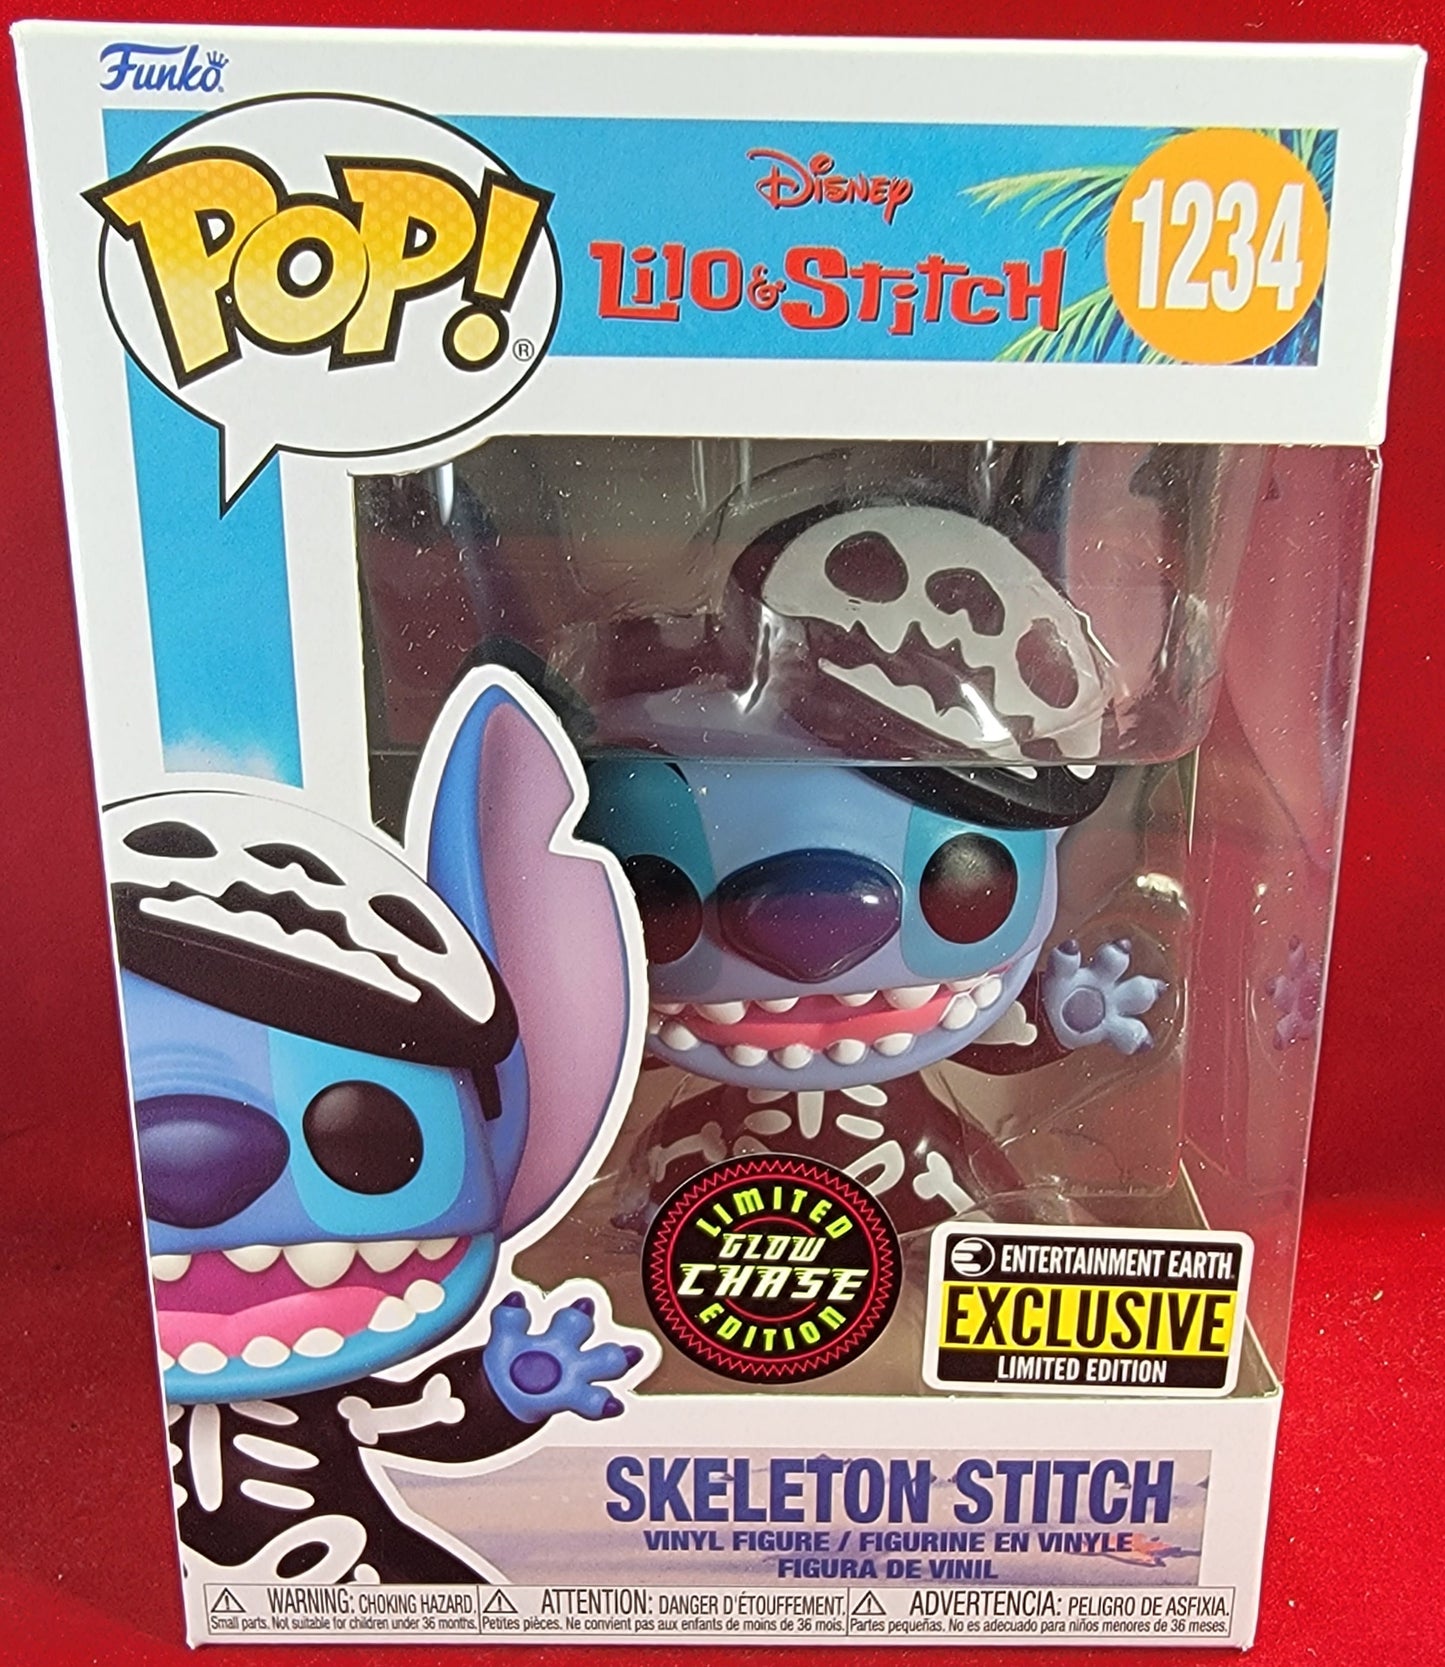 Skeleton stitch chase entertainment earth exclusive funko # 1234 (nib)